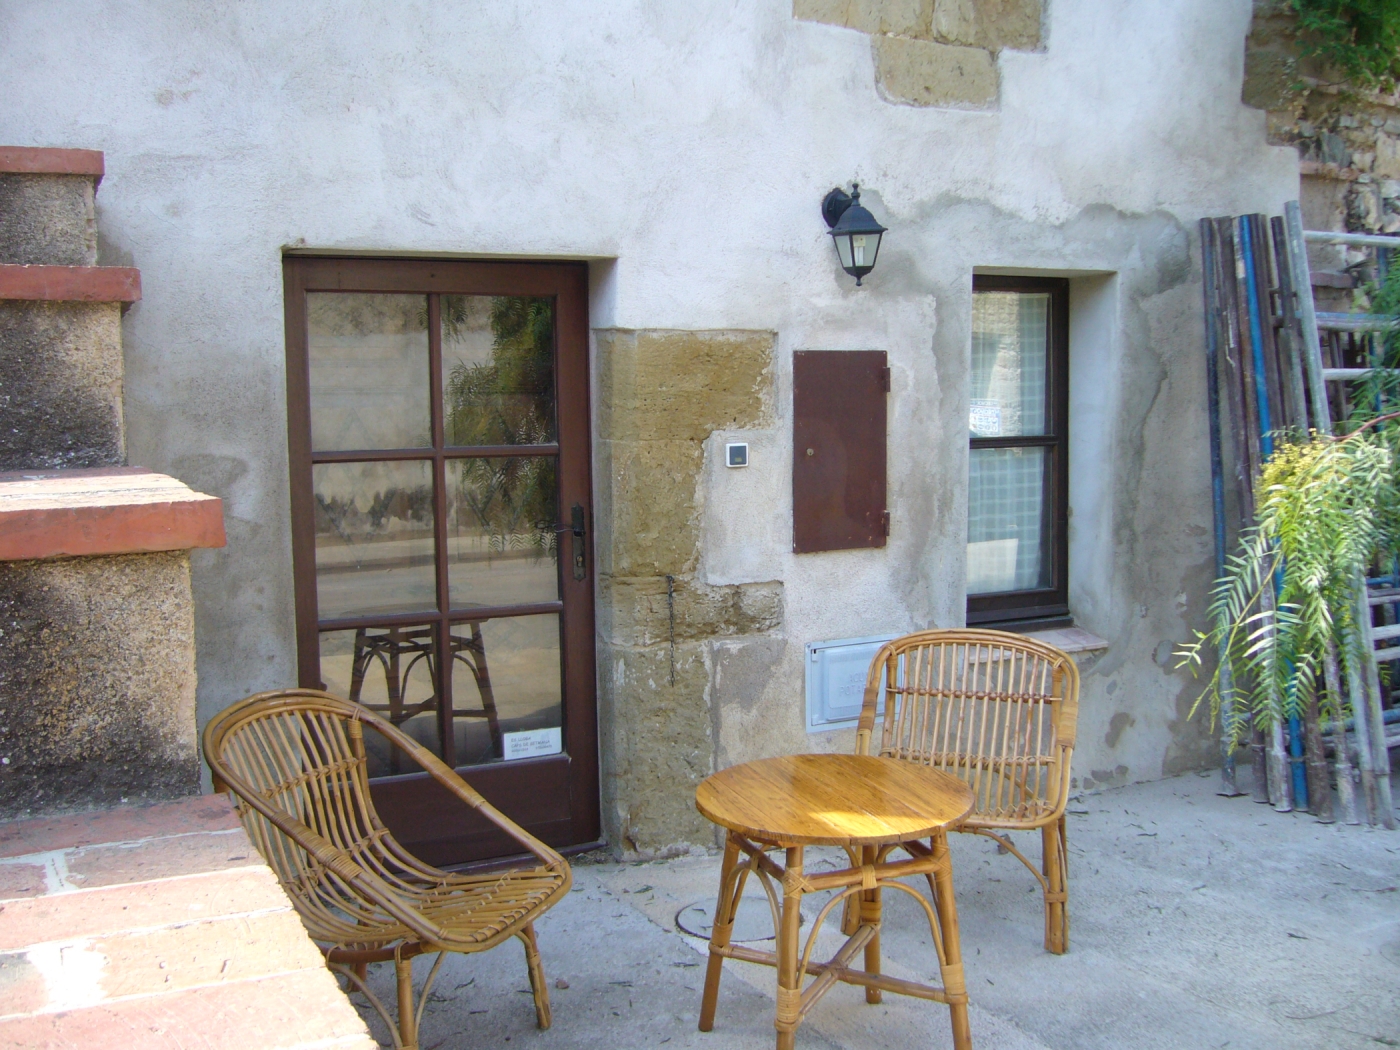 Casa Petita estilo rustico de pueblo medieval cerca de las playas en Cruïlles, Monells i Sant Sadurní de l'Heura